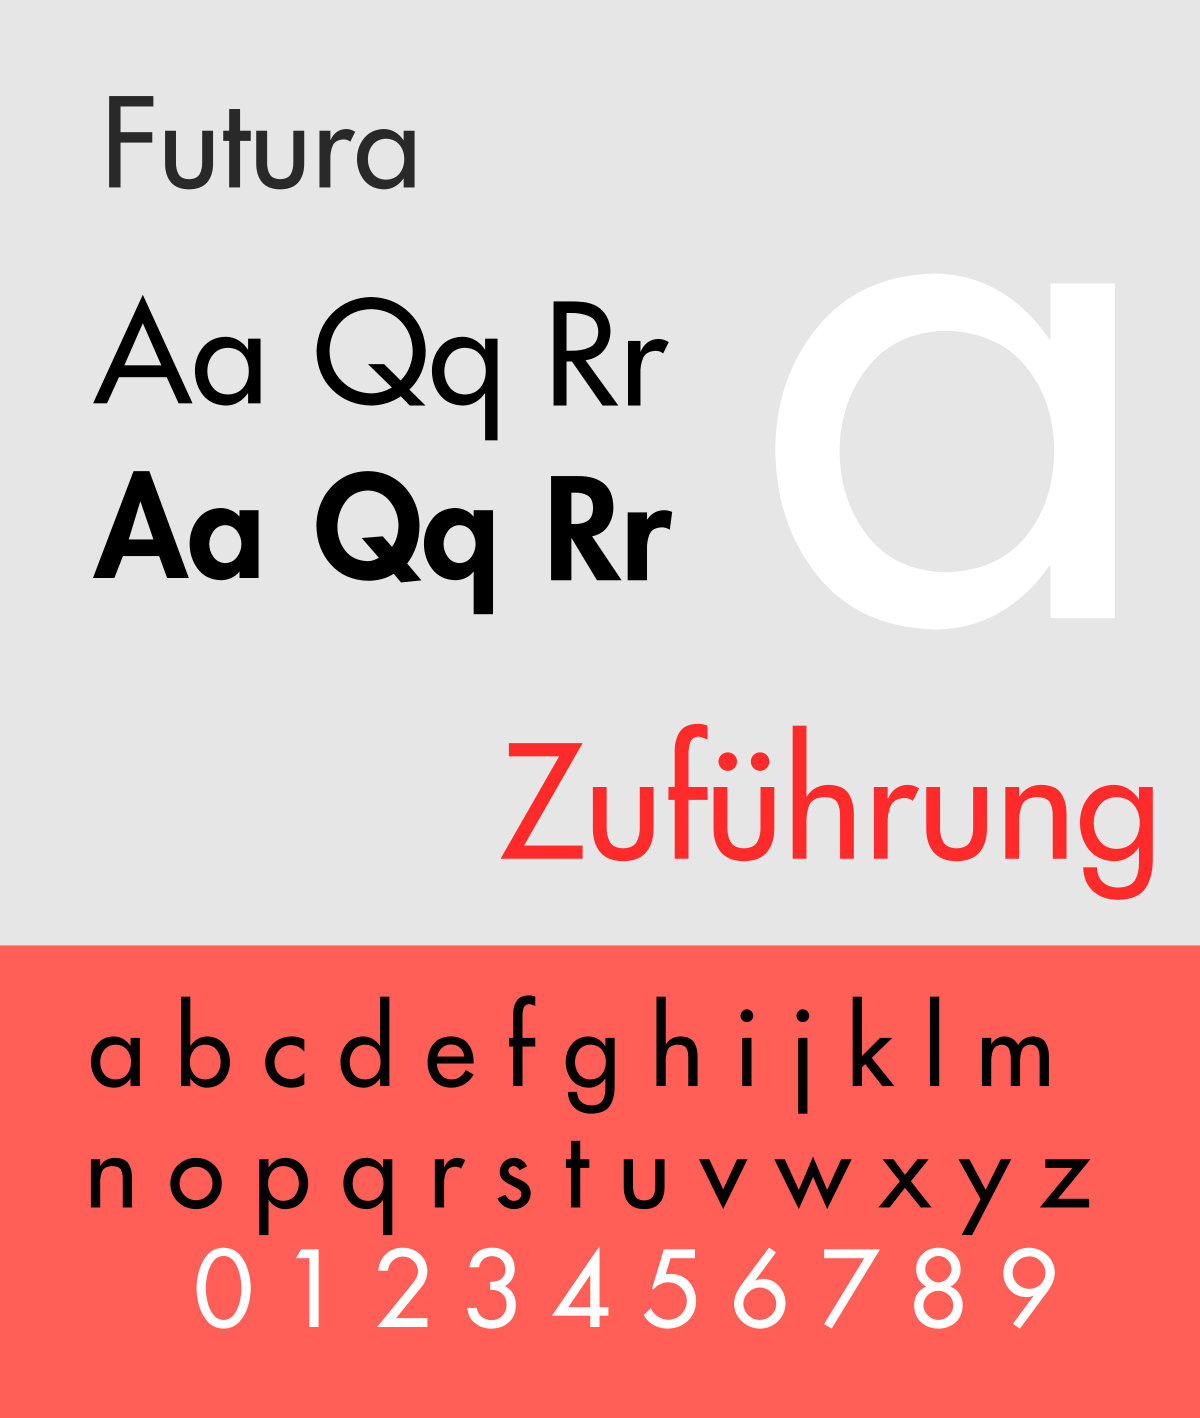 Las tipografías más utilizadas en publicidad: Futura